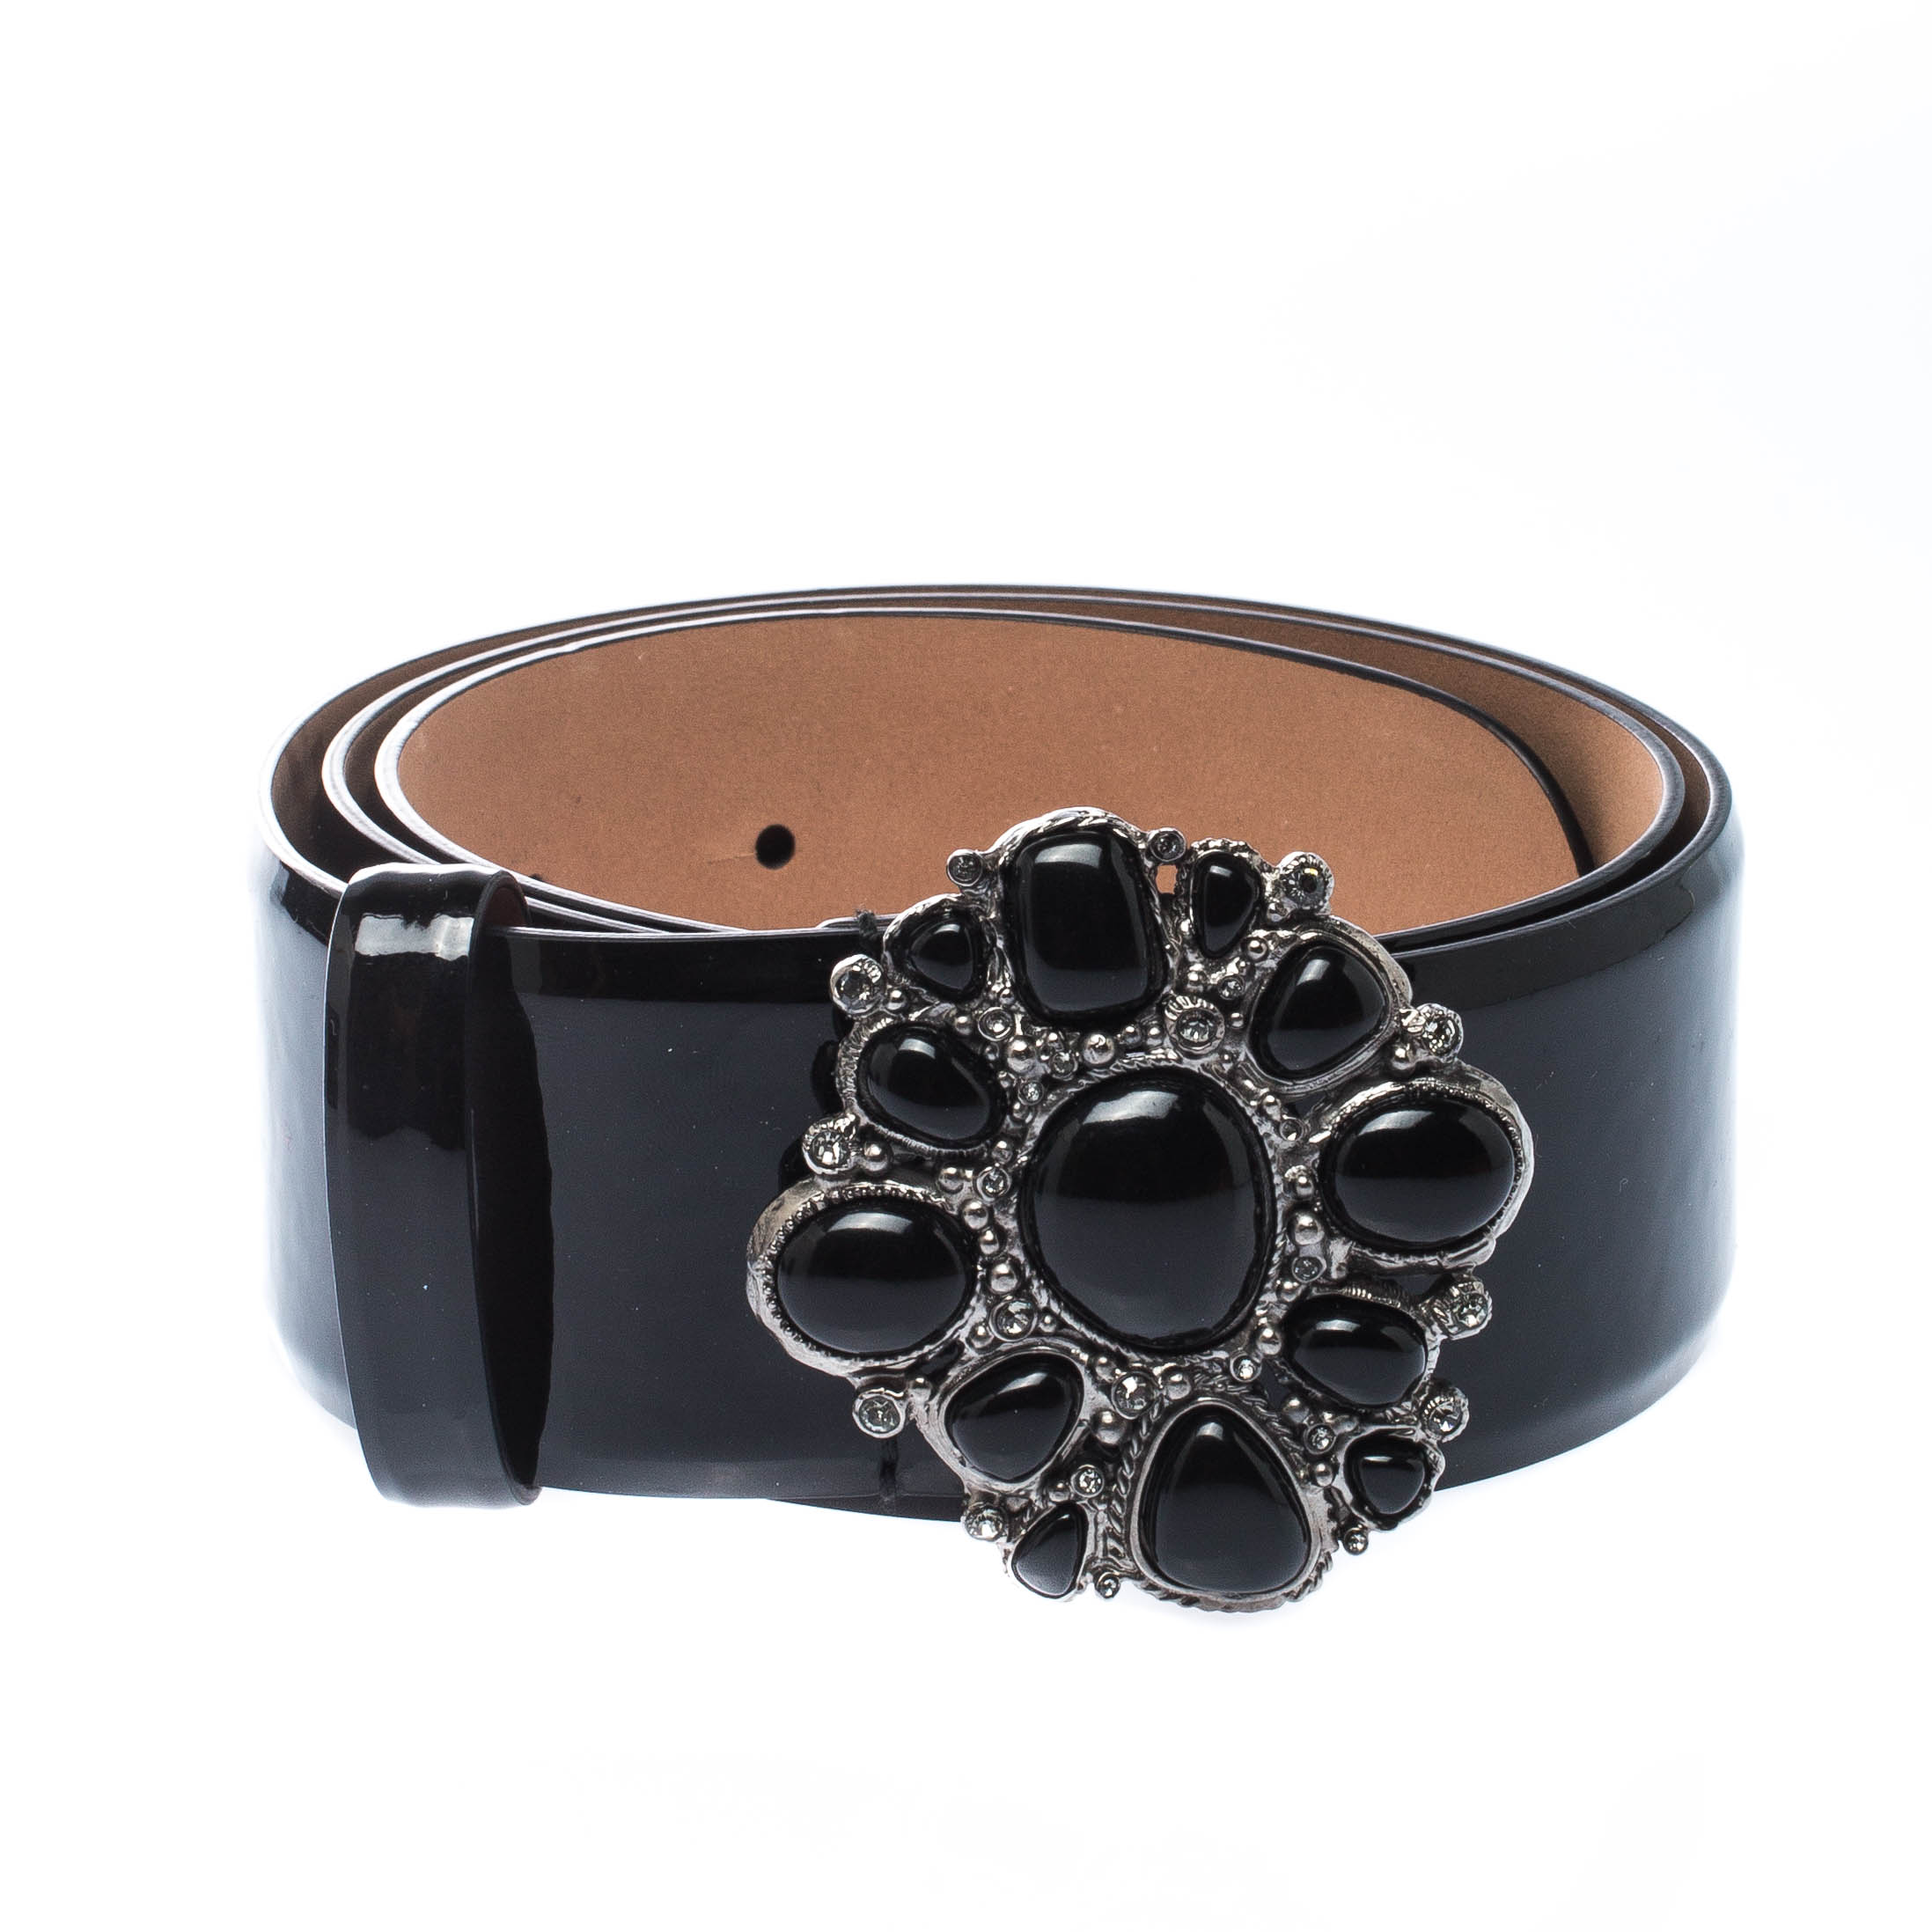 

Chanel Black Patent Leather Embellished Buckle Belt